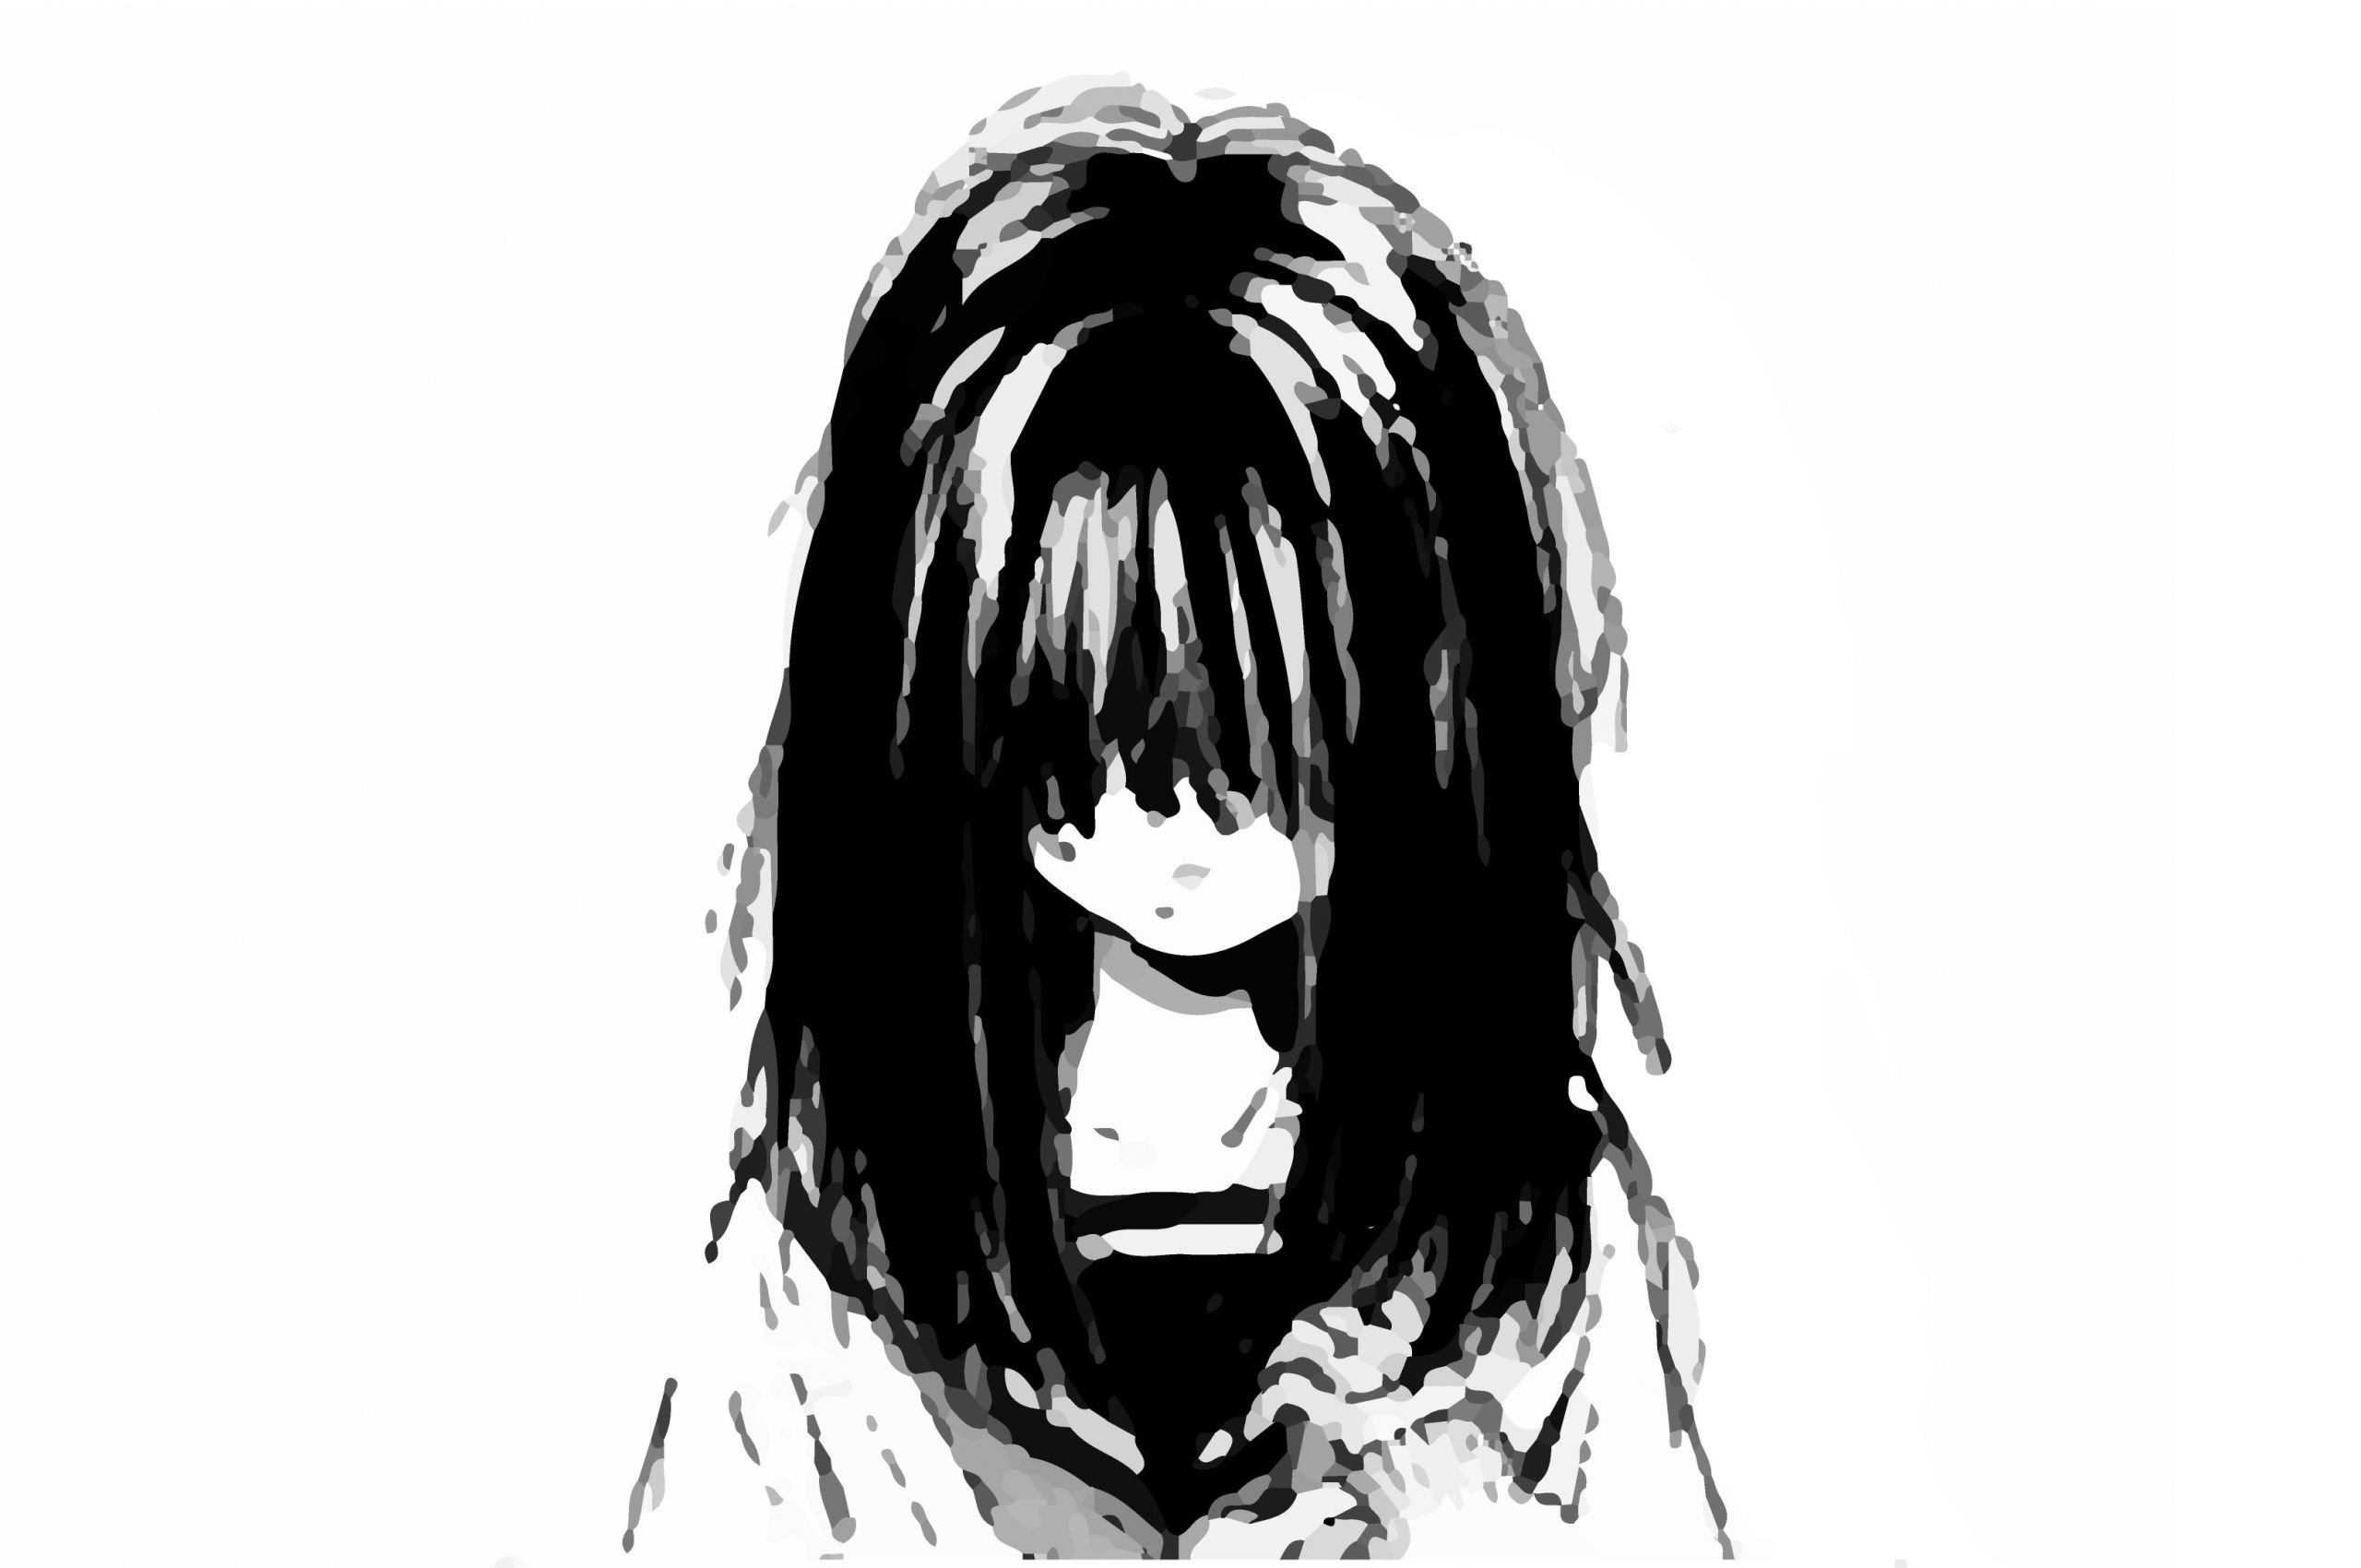 Sad Anime Pfp Falling / No 854321979 Sad Anime Girl Png Image